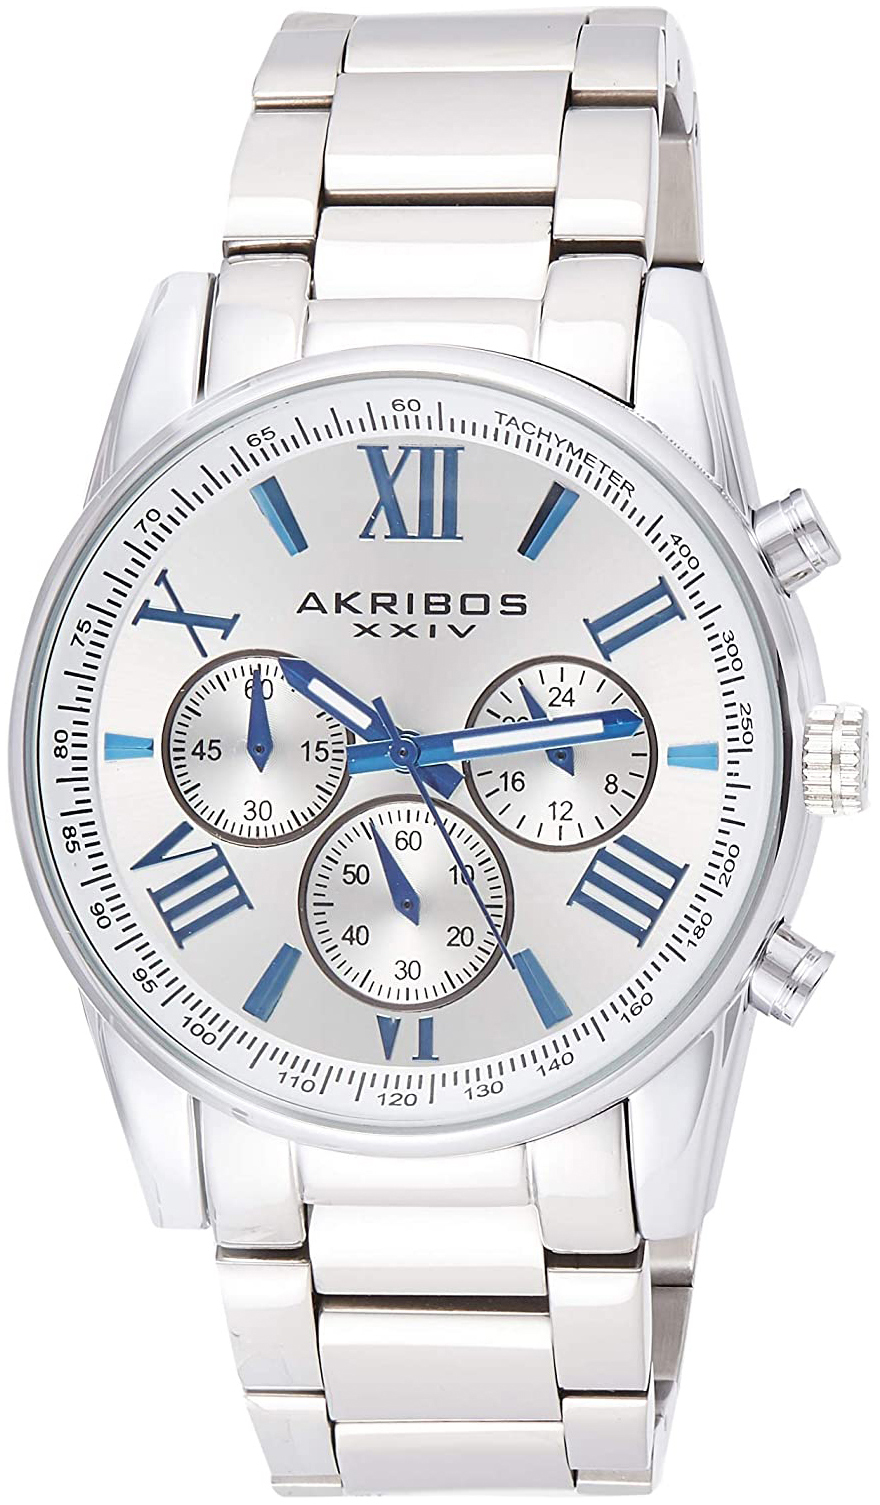 Akribos XXIV Chronograph Herrklocka AK865SS Silverfärgad/Stål Ø41 mm - Akribos XXIV